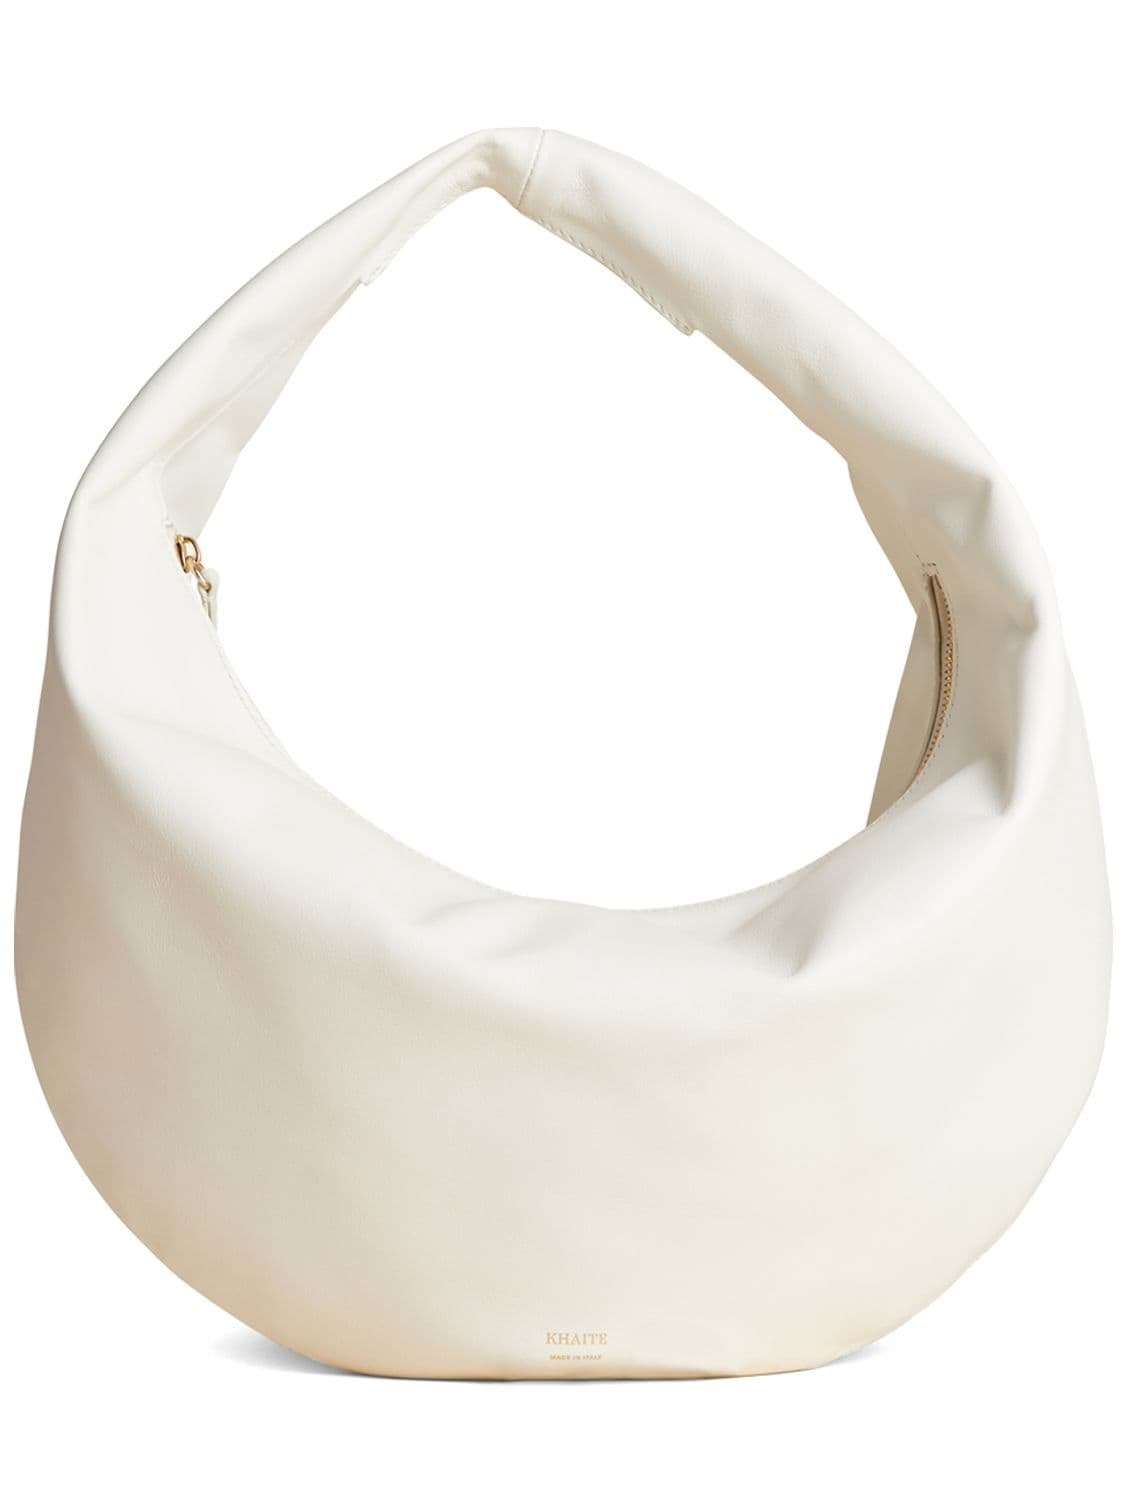 KHAITE Medium Olivia Leather Hobo Shoulder Bag in white